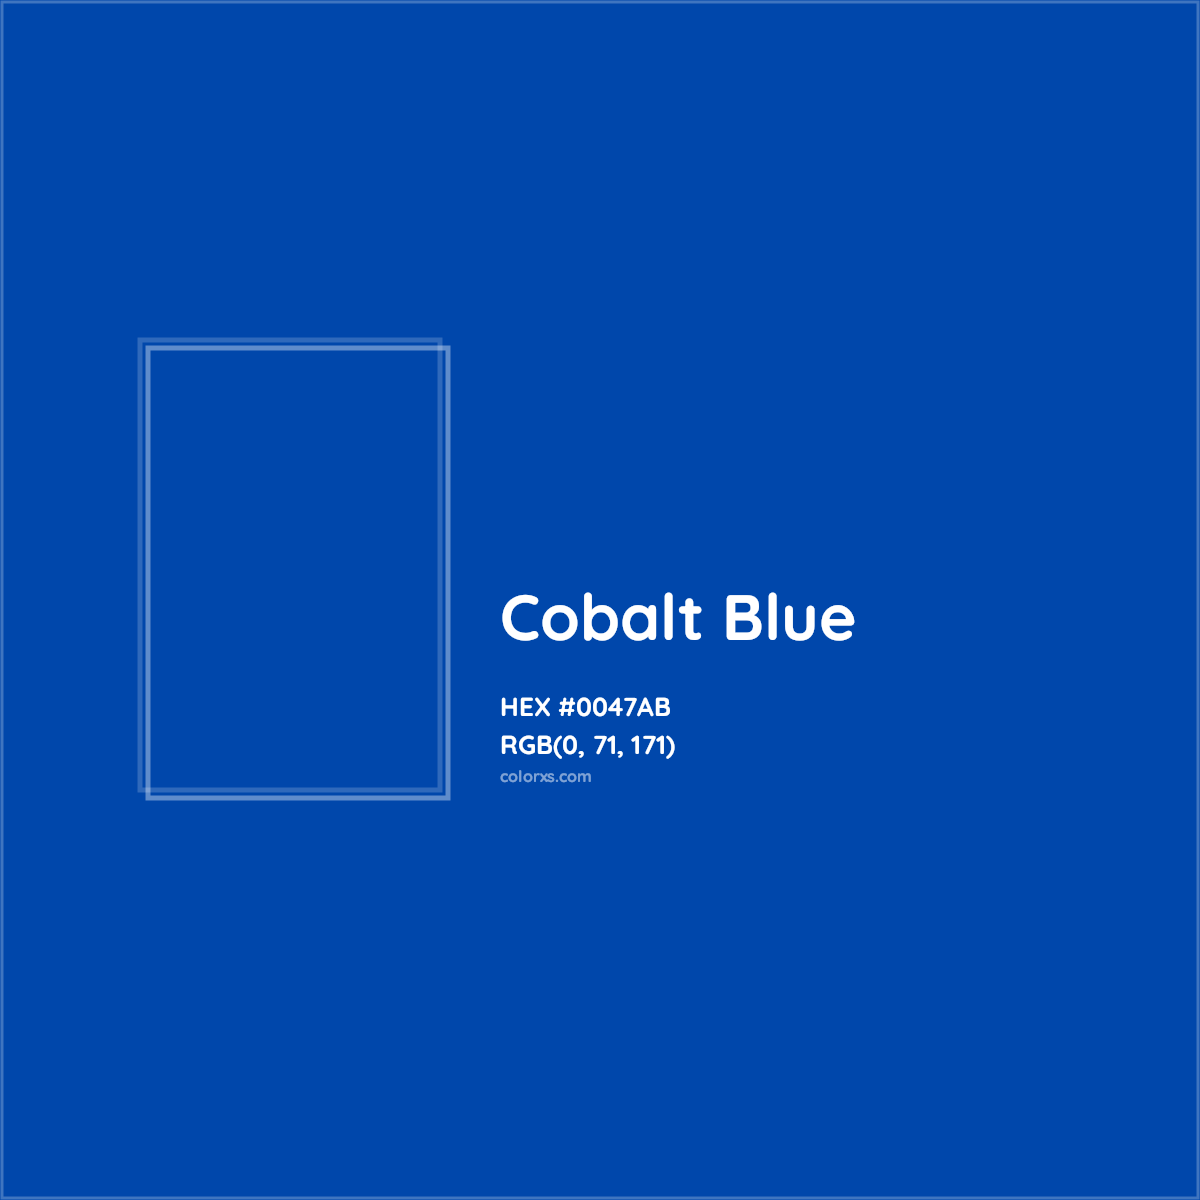 1. "Cobalt Blue" Nail Polish Shades - wide 2